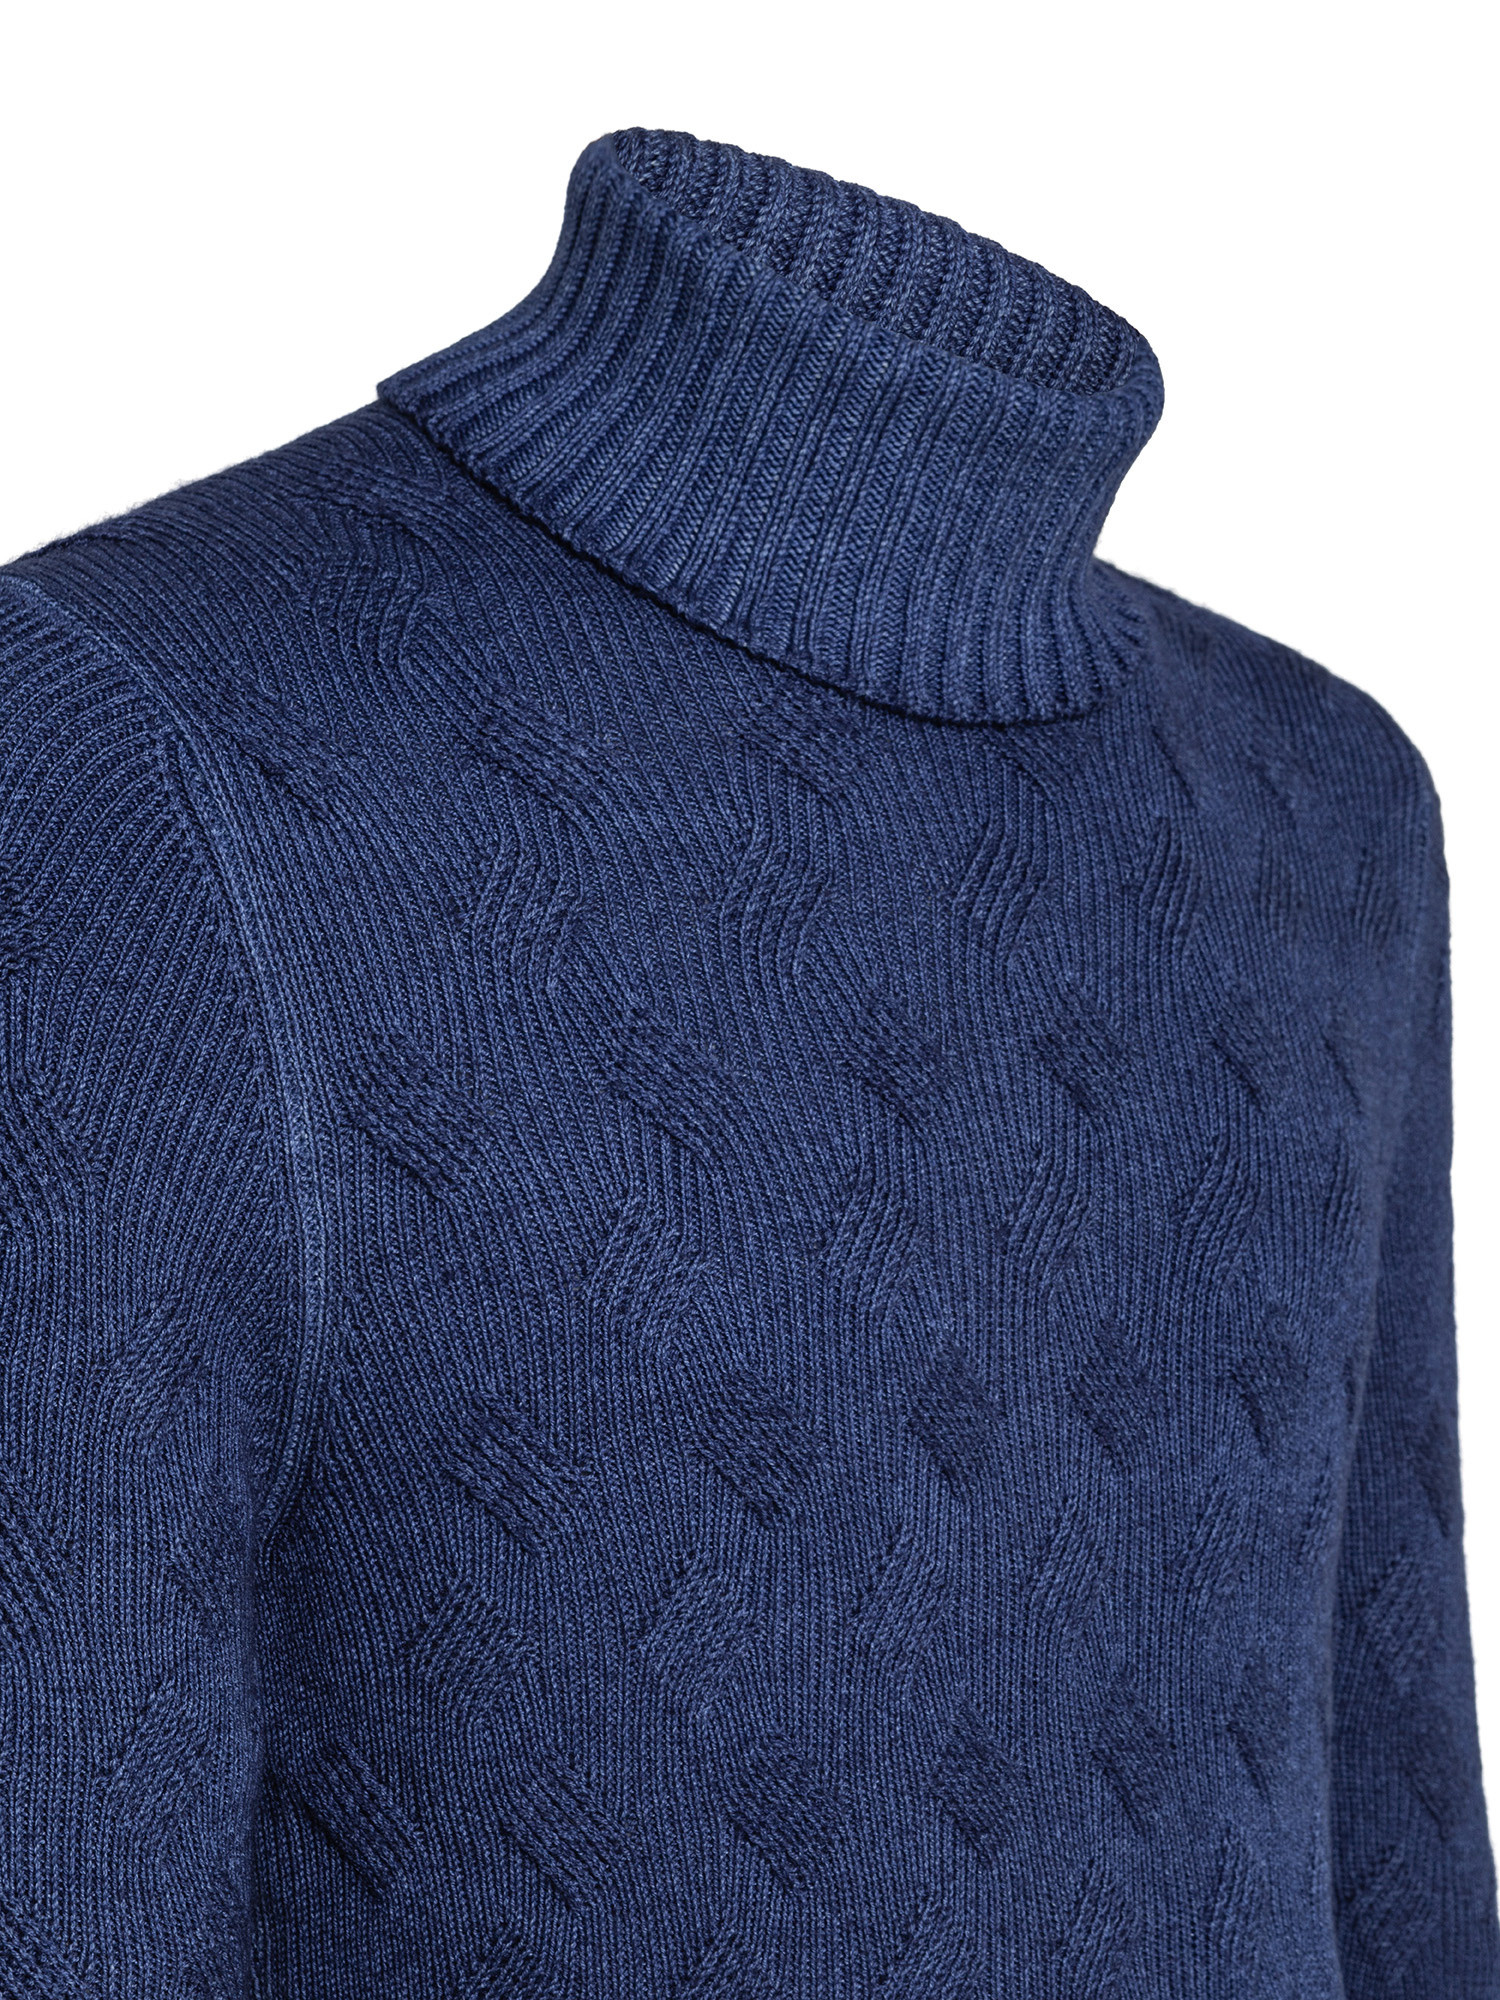 Dolcevita in lana merinos vintage 2 fili con lavorazione a trecce, Blu, large image number 2